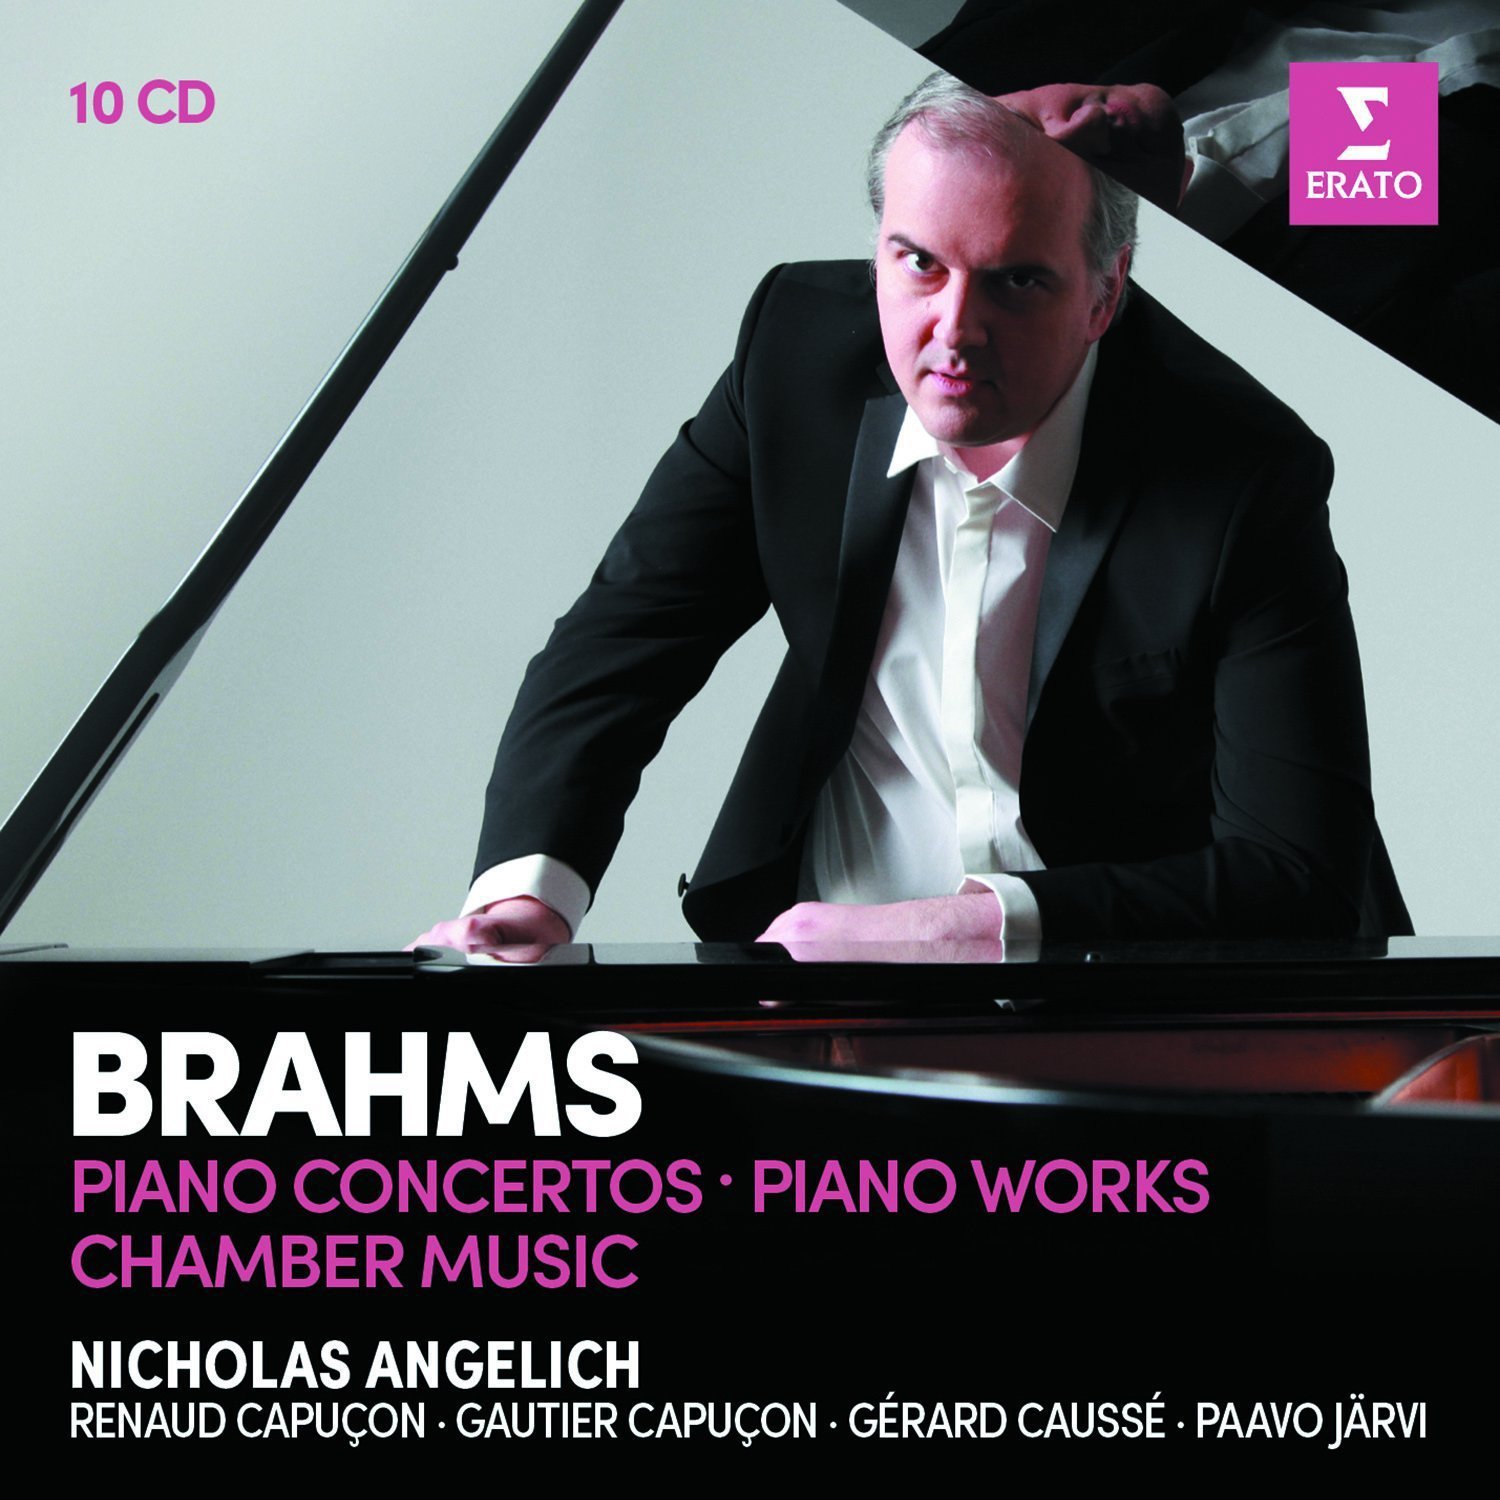 Brahms: Piano Concertos, Piano Works, Violin Sonatas, Piano Trios, Piano Quartets | Renaud Capucon, Gautier Capucon, Paavo Jarvi Nicholas Angelich